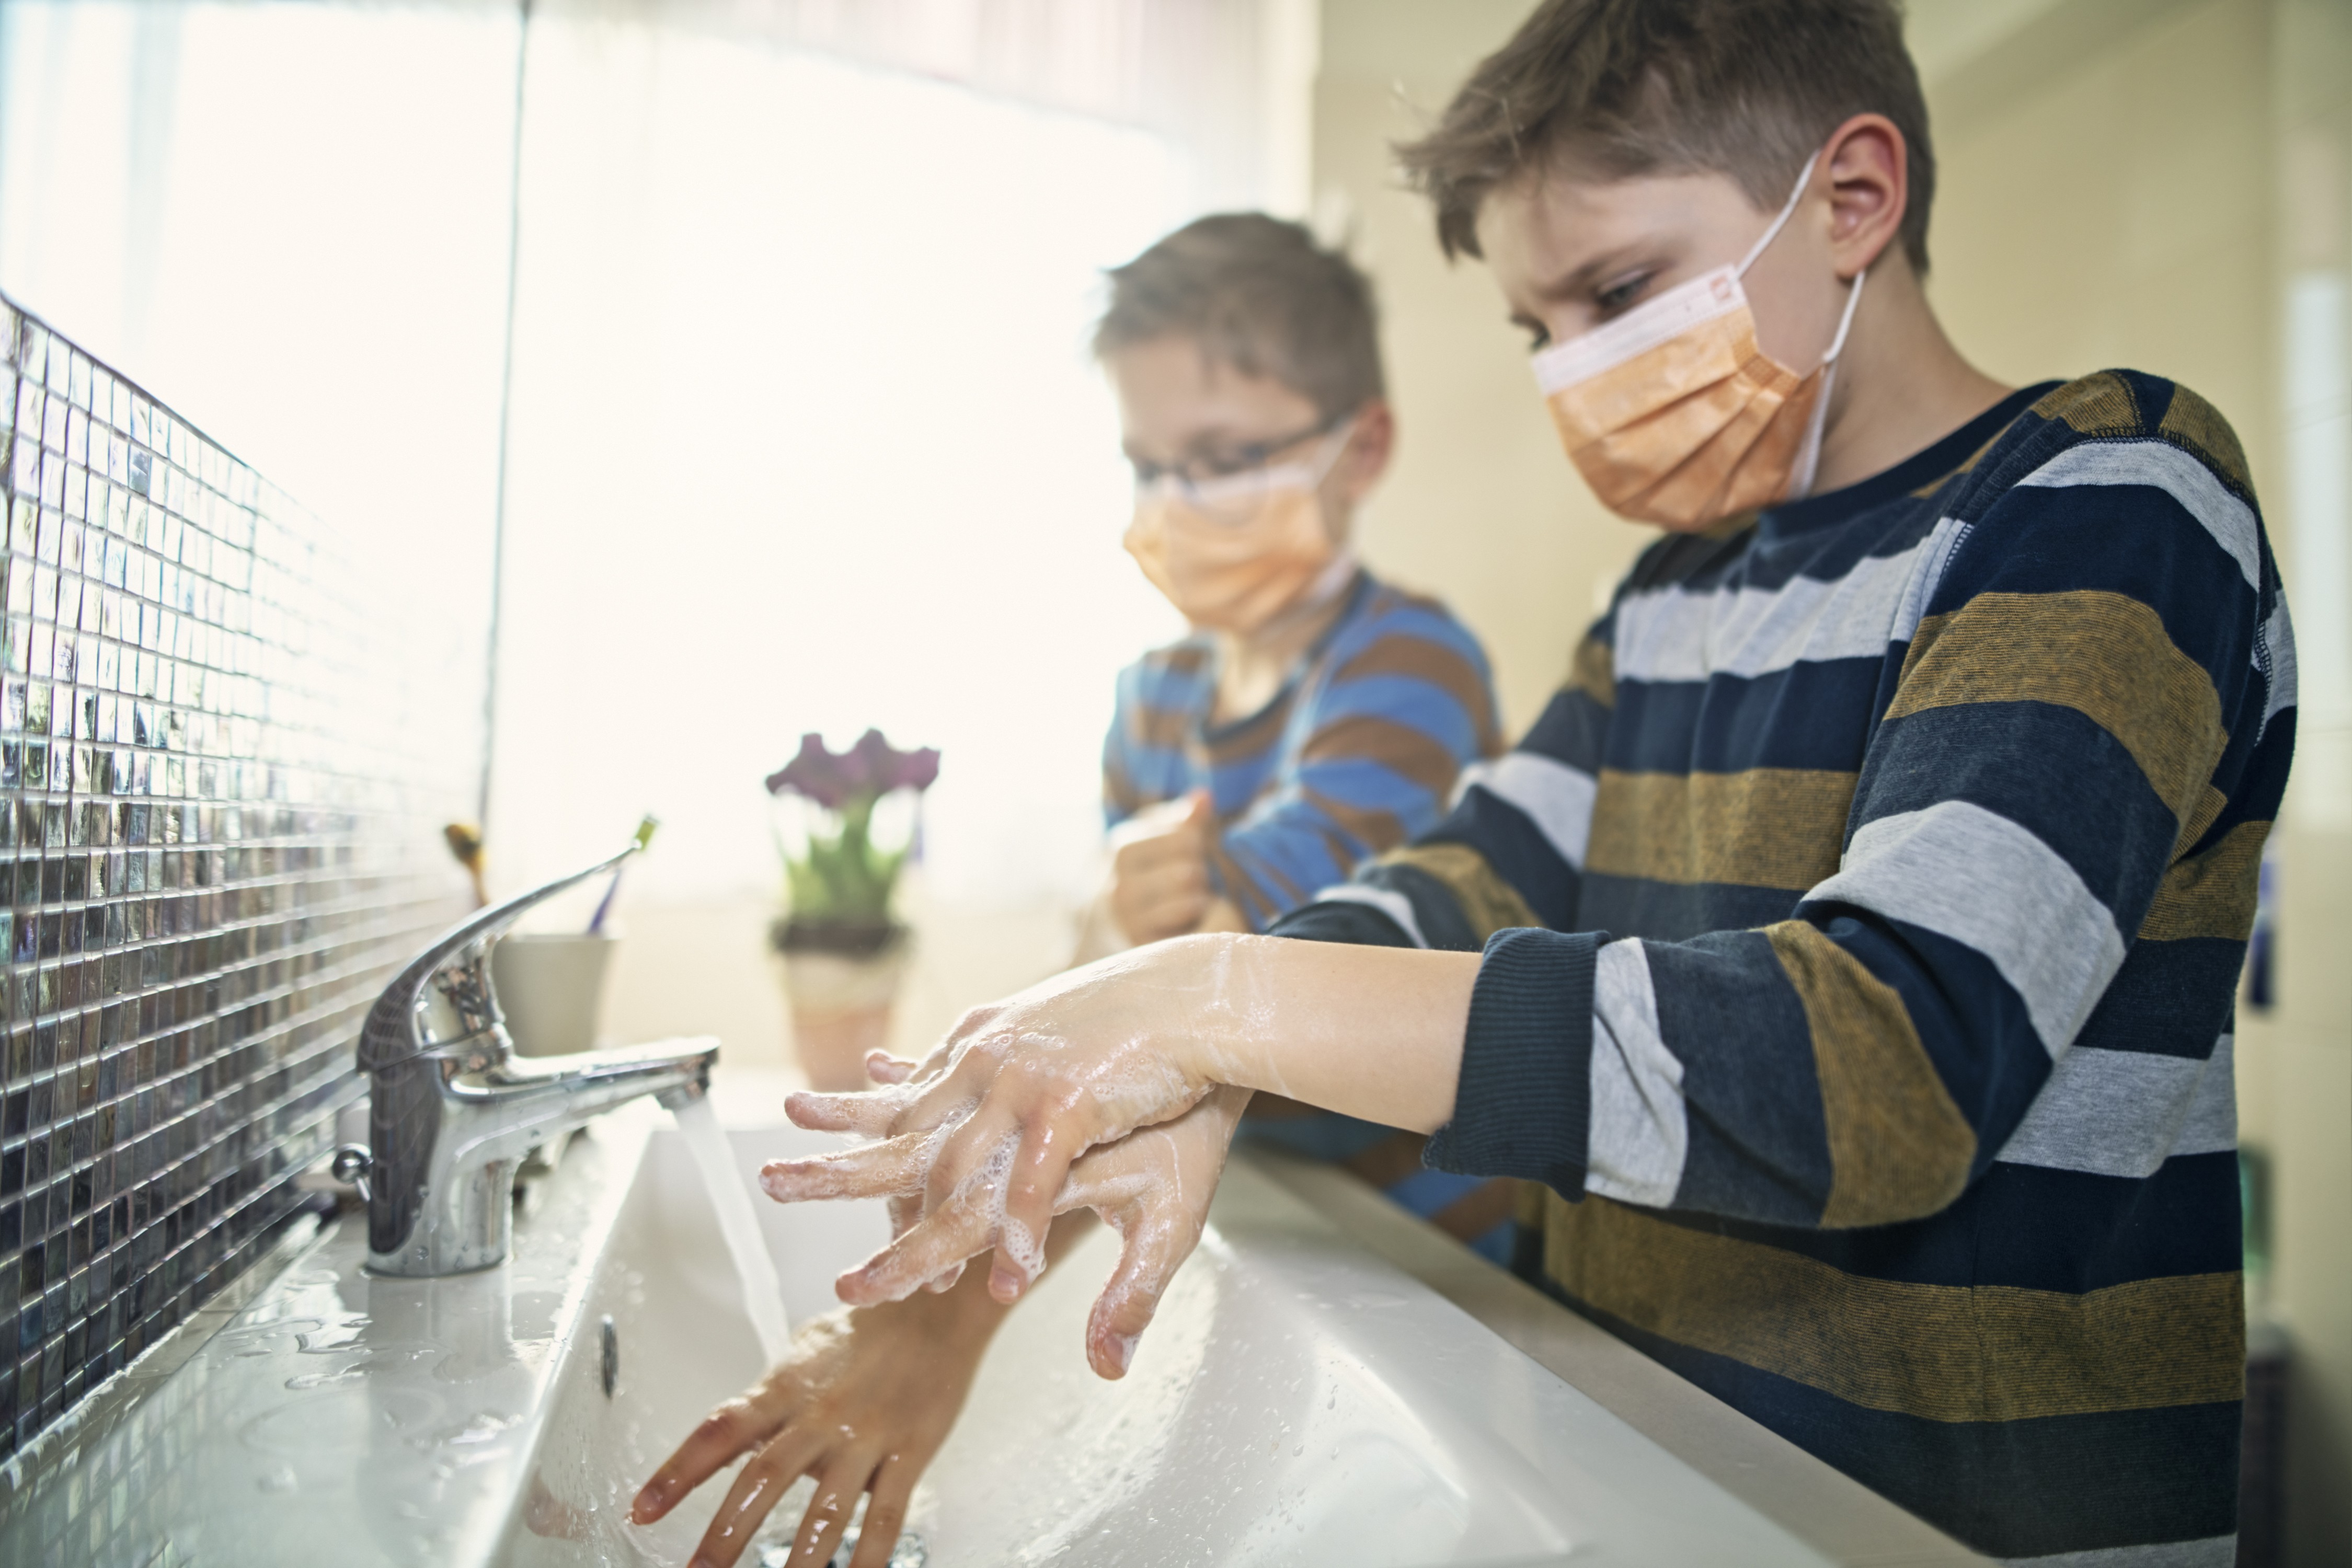 Crianças lavando a mão (Foto: Getty Images)